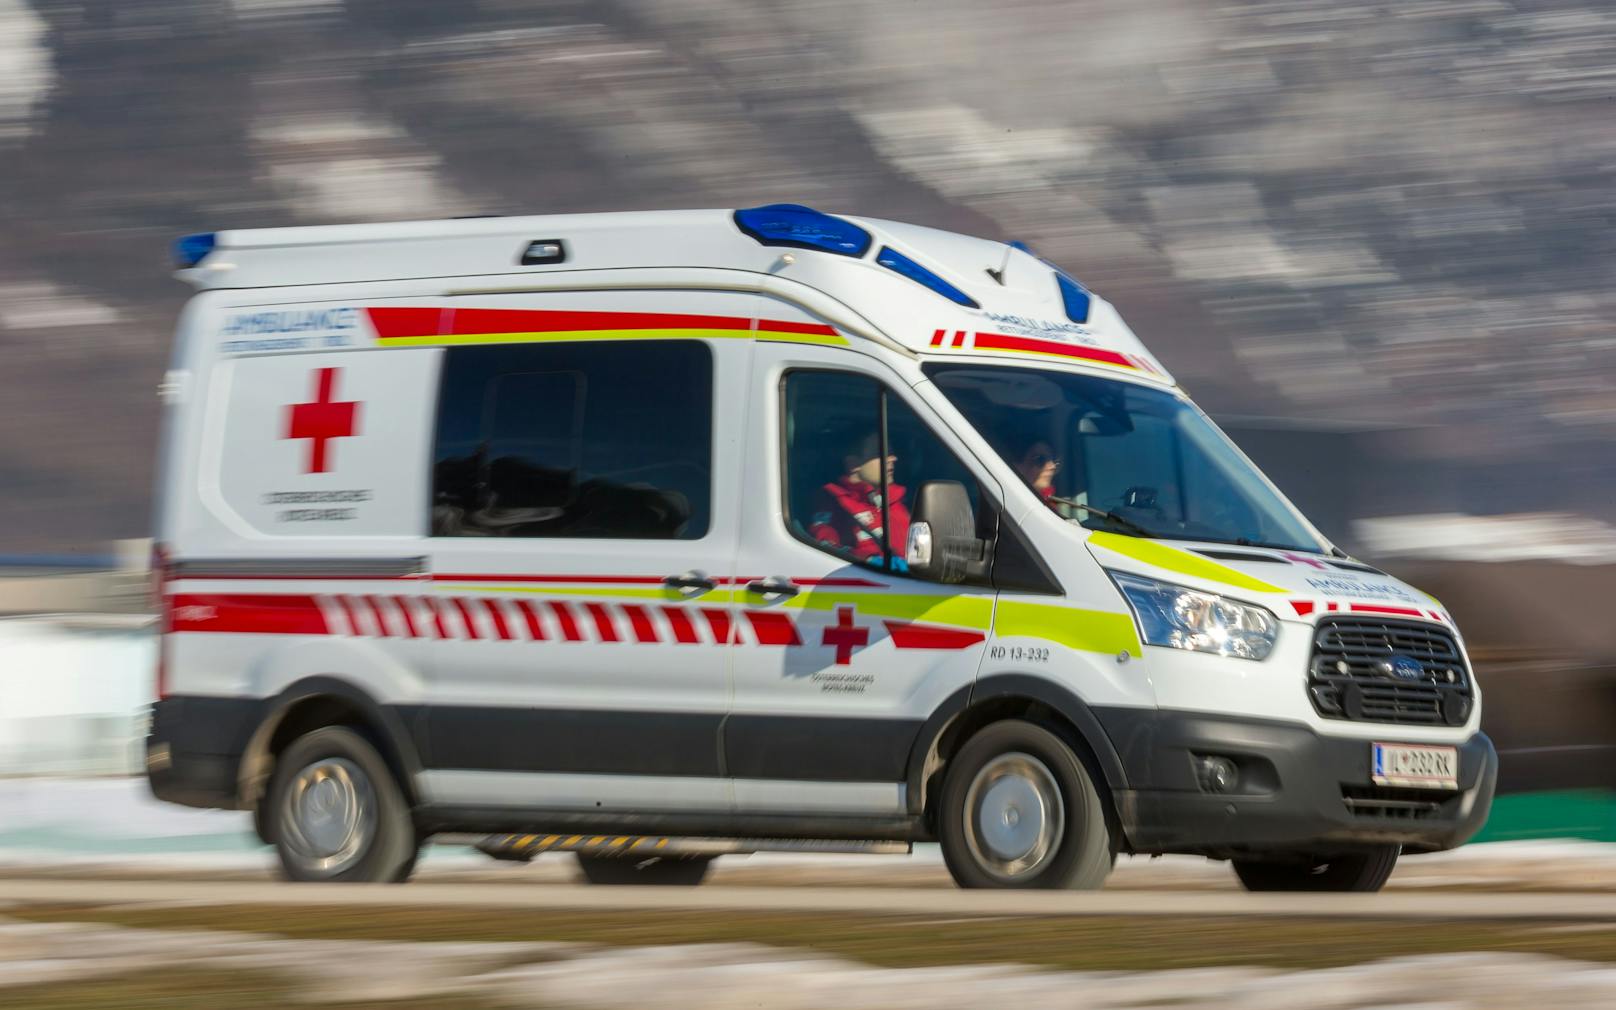 Nach einer Kollision mit einer Hauswand musste die Rettung in Bregenz zur Erstversorgung ausrücken. (Symbolfoto)